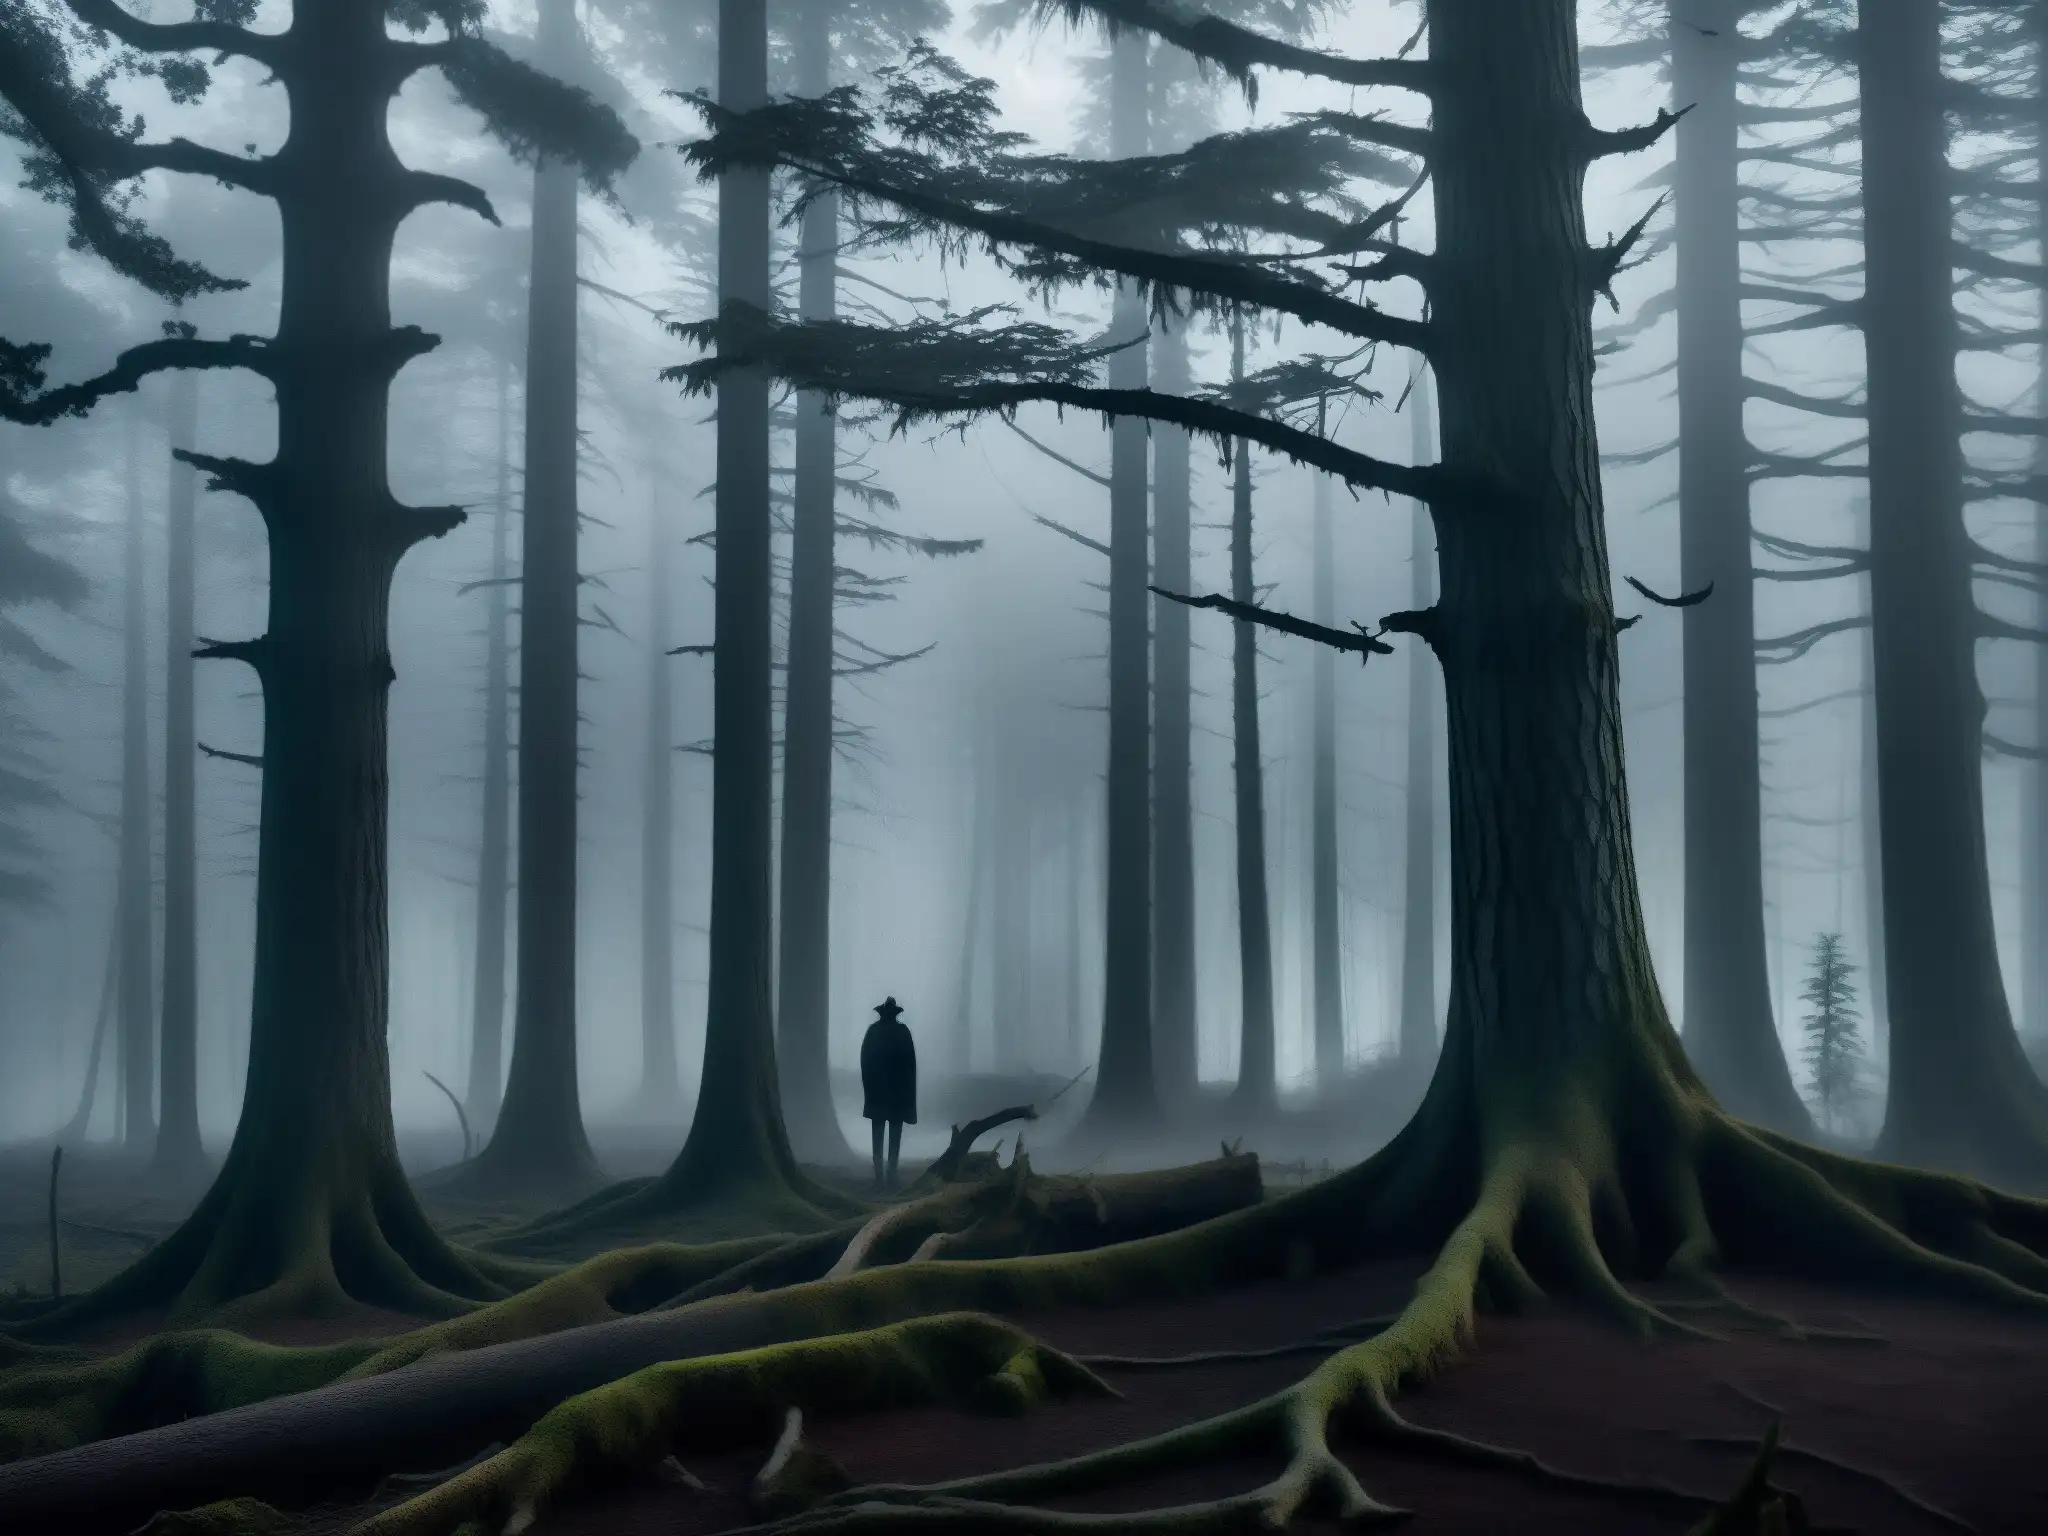 Escena tenebrosa en un bosque oscuro al anochecer con figuras misteriosas entre los árboles